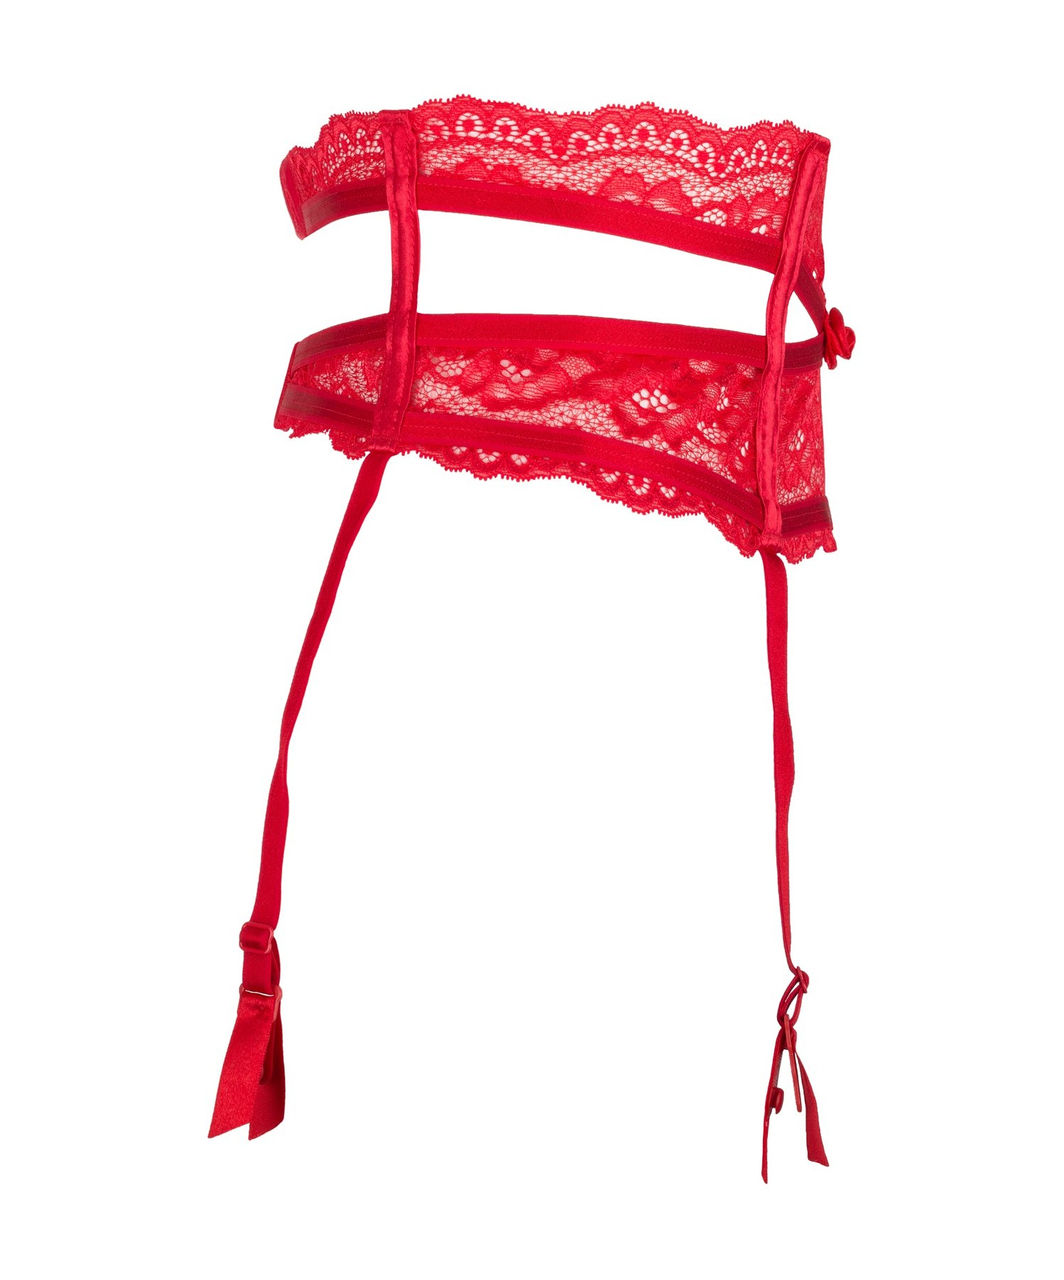 Axami Sexy Intense red garter belt